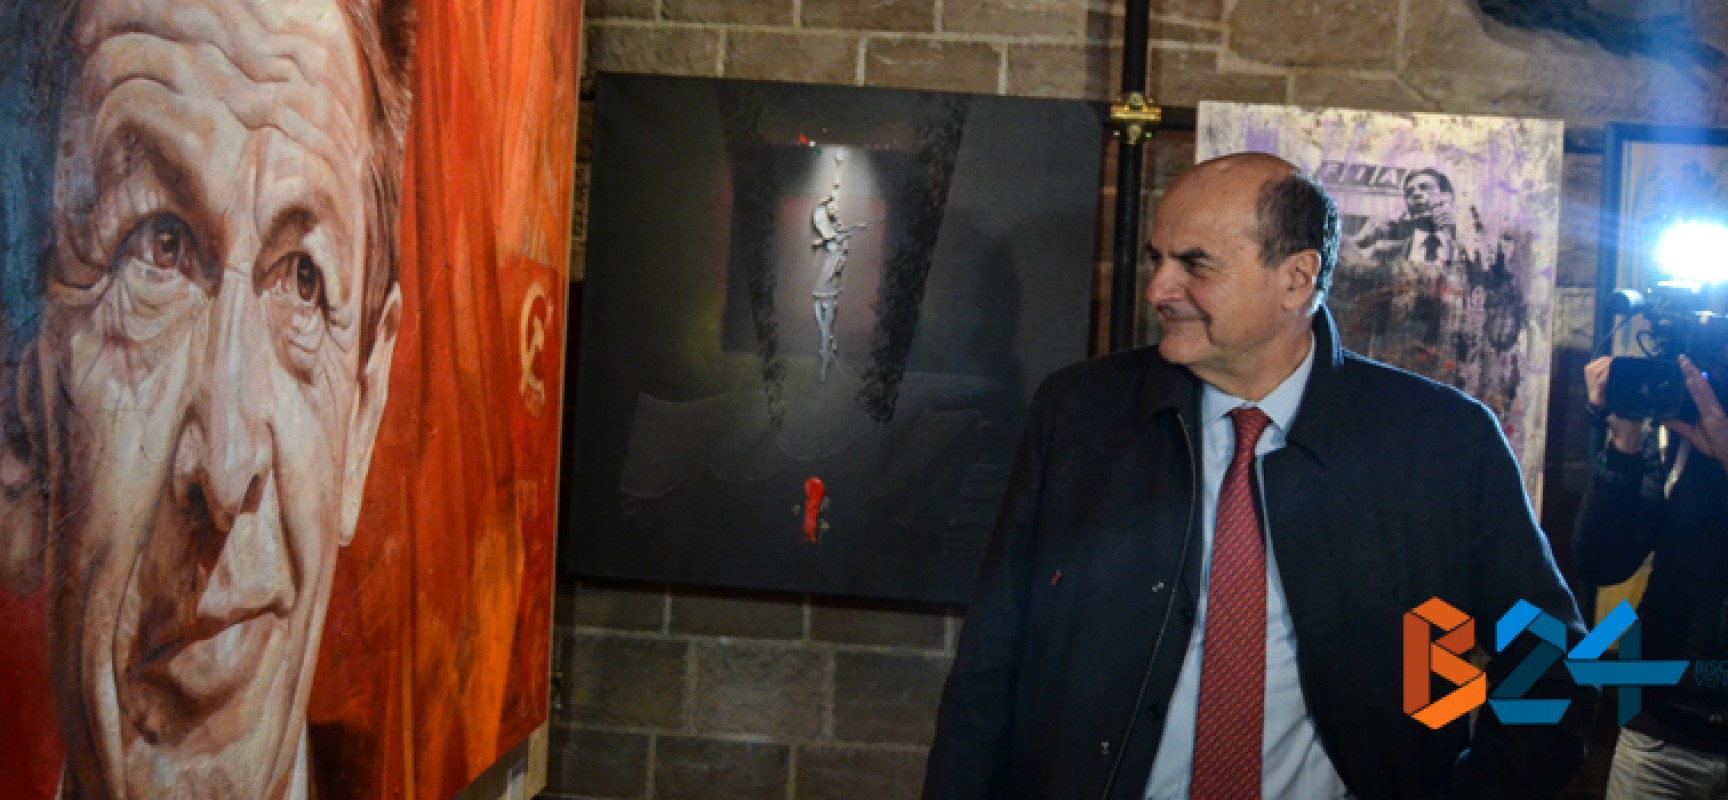 Inaugurata la mostra su Berlinguer, Bersani: “Giovani dimostrino che può esistere una politica pulita” / FOTO